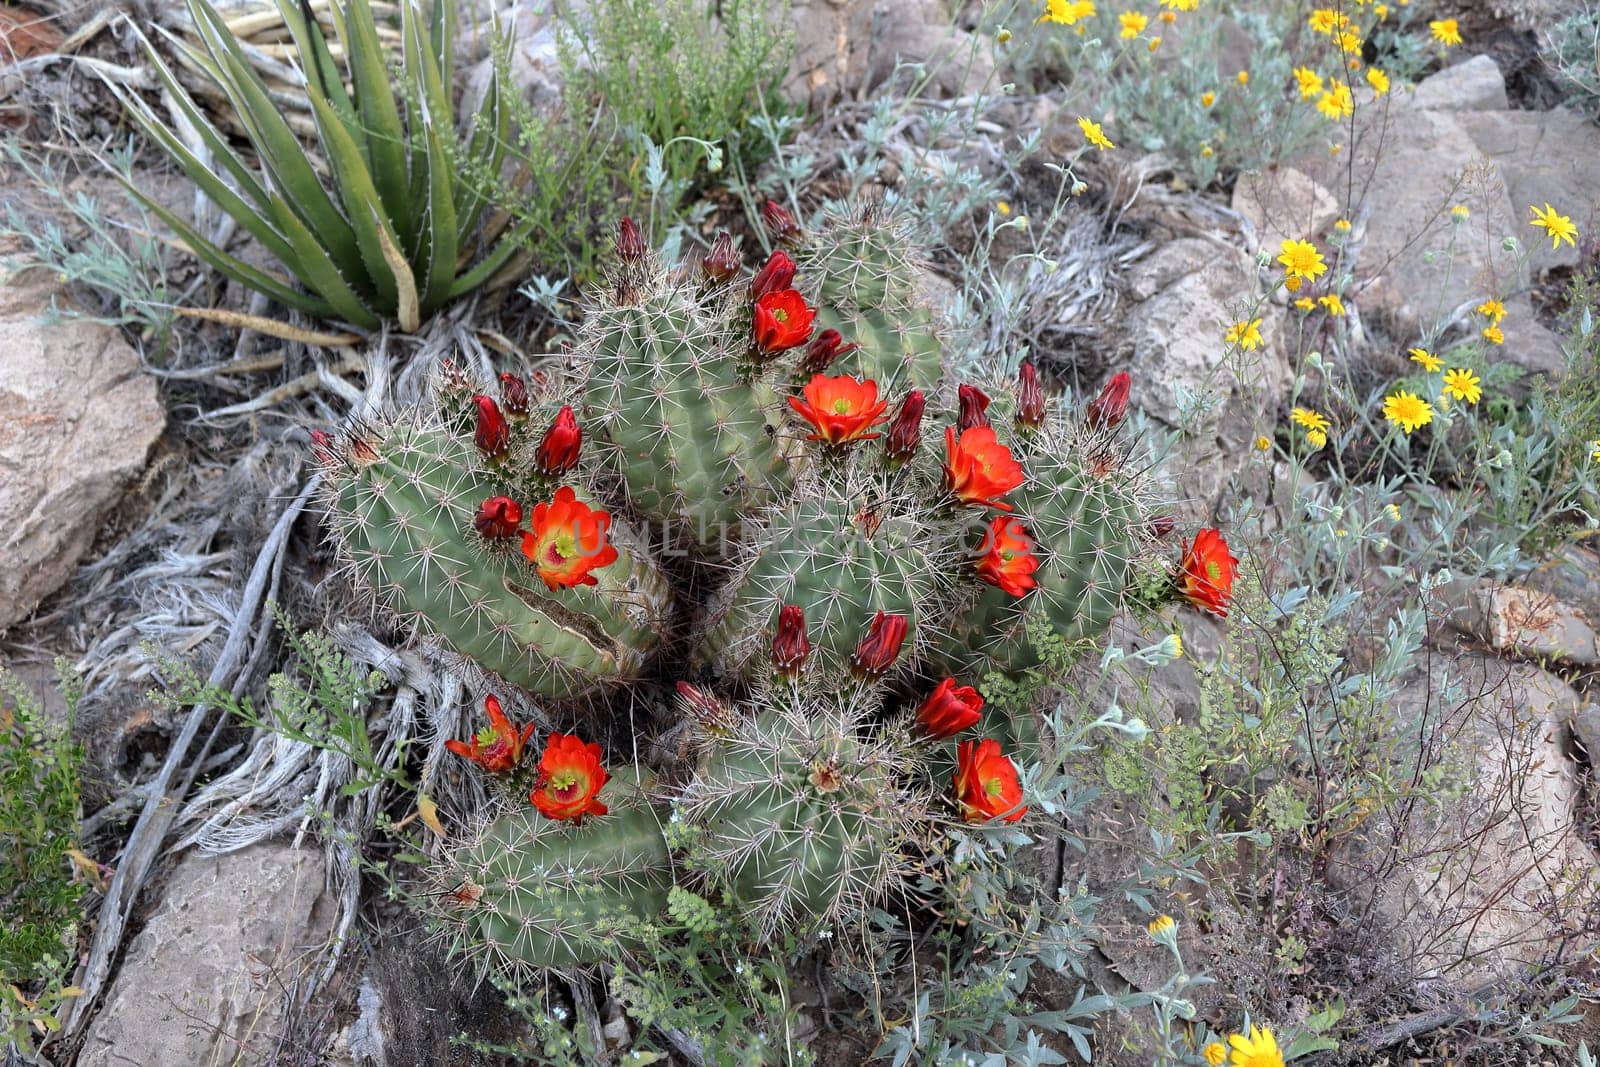 Blooming claret cup cactus blossoms in El Paso, Texas, USA. Echinocereus Triglochidiatus var. Gurneyi.